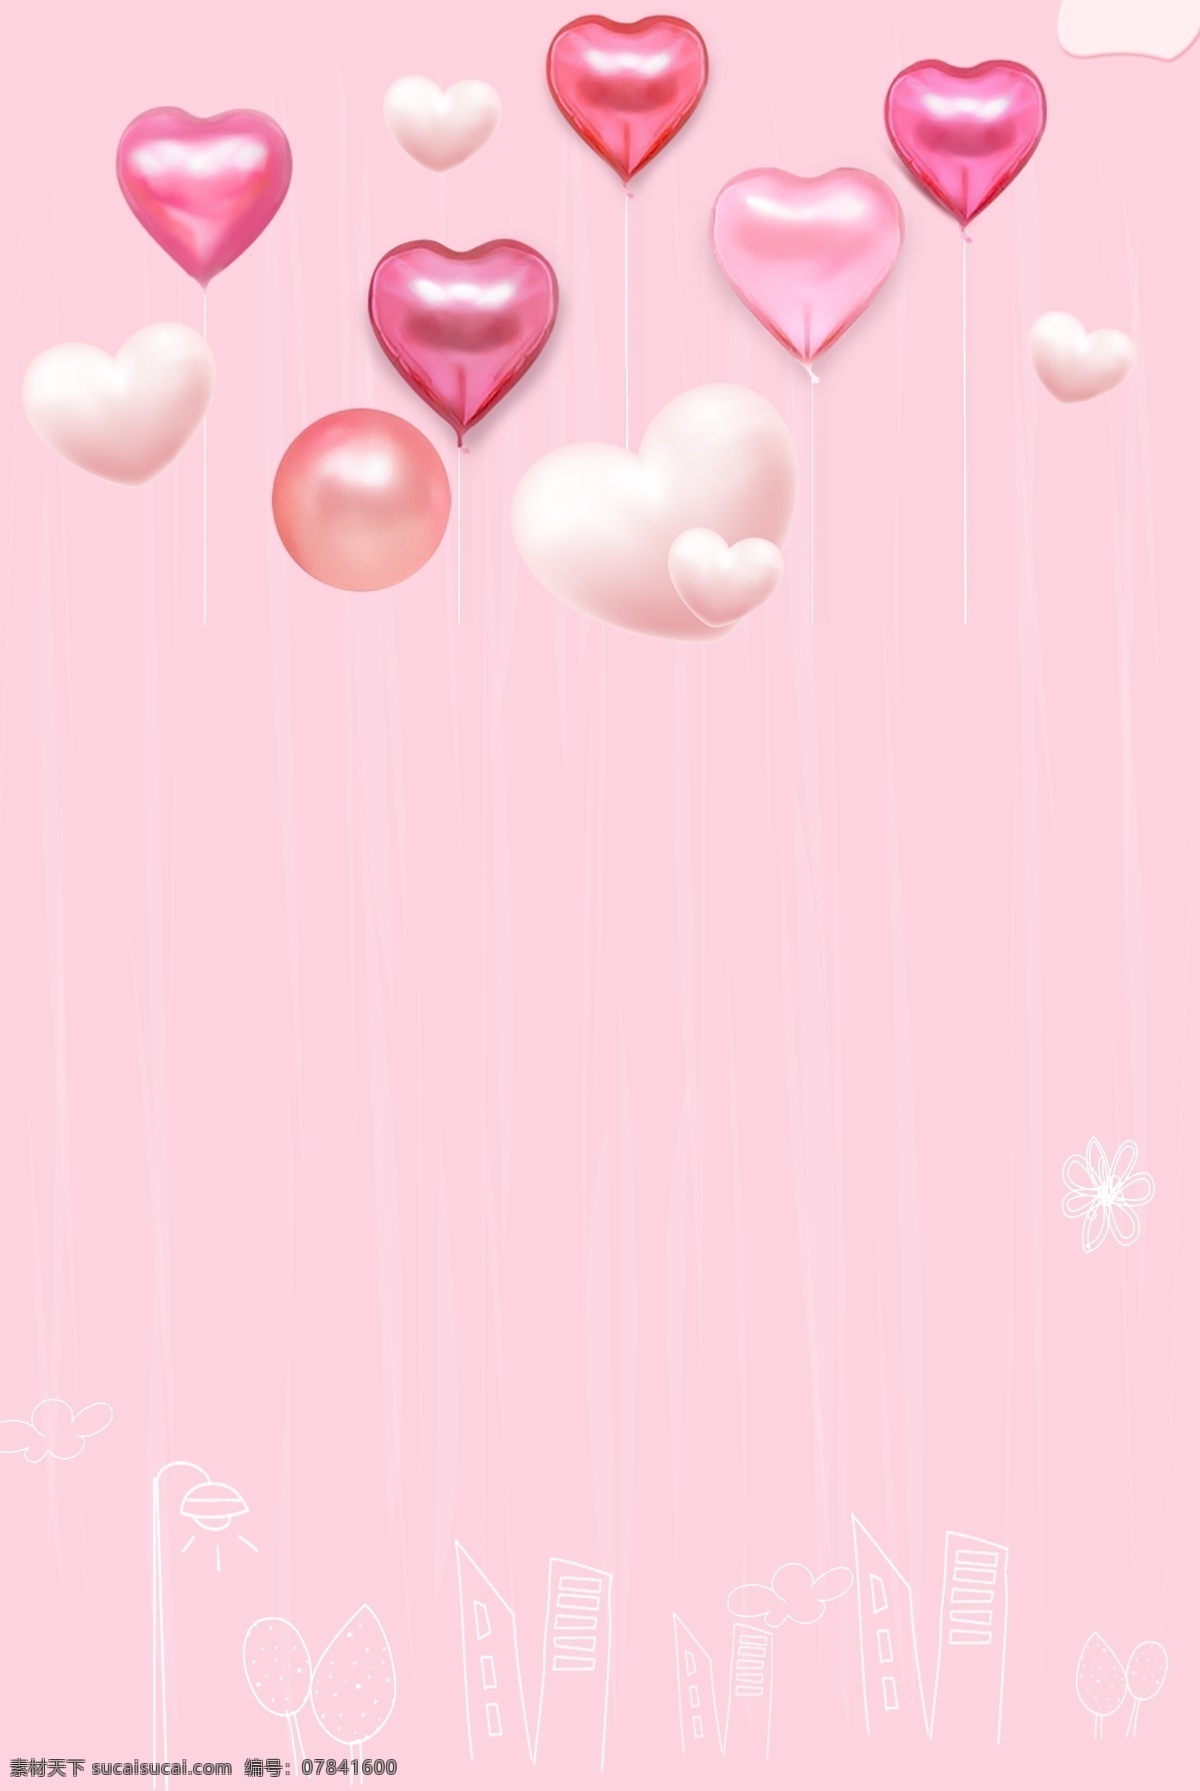 简单 气球 粉色 背景 为爱放价 520 情人节 网络 520表白节 告白 爱情 结婚 婚庆 电商 浪漫